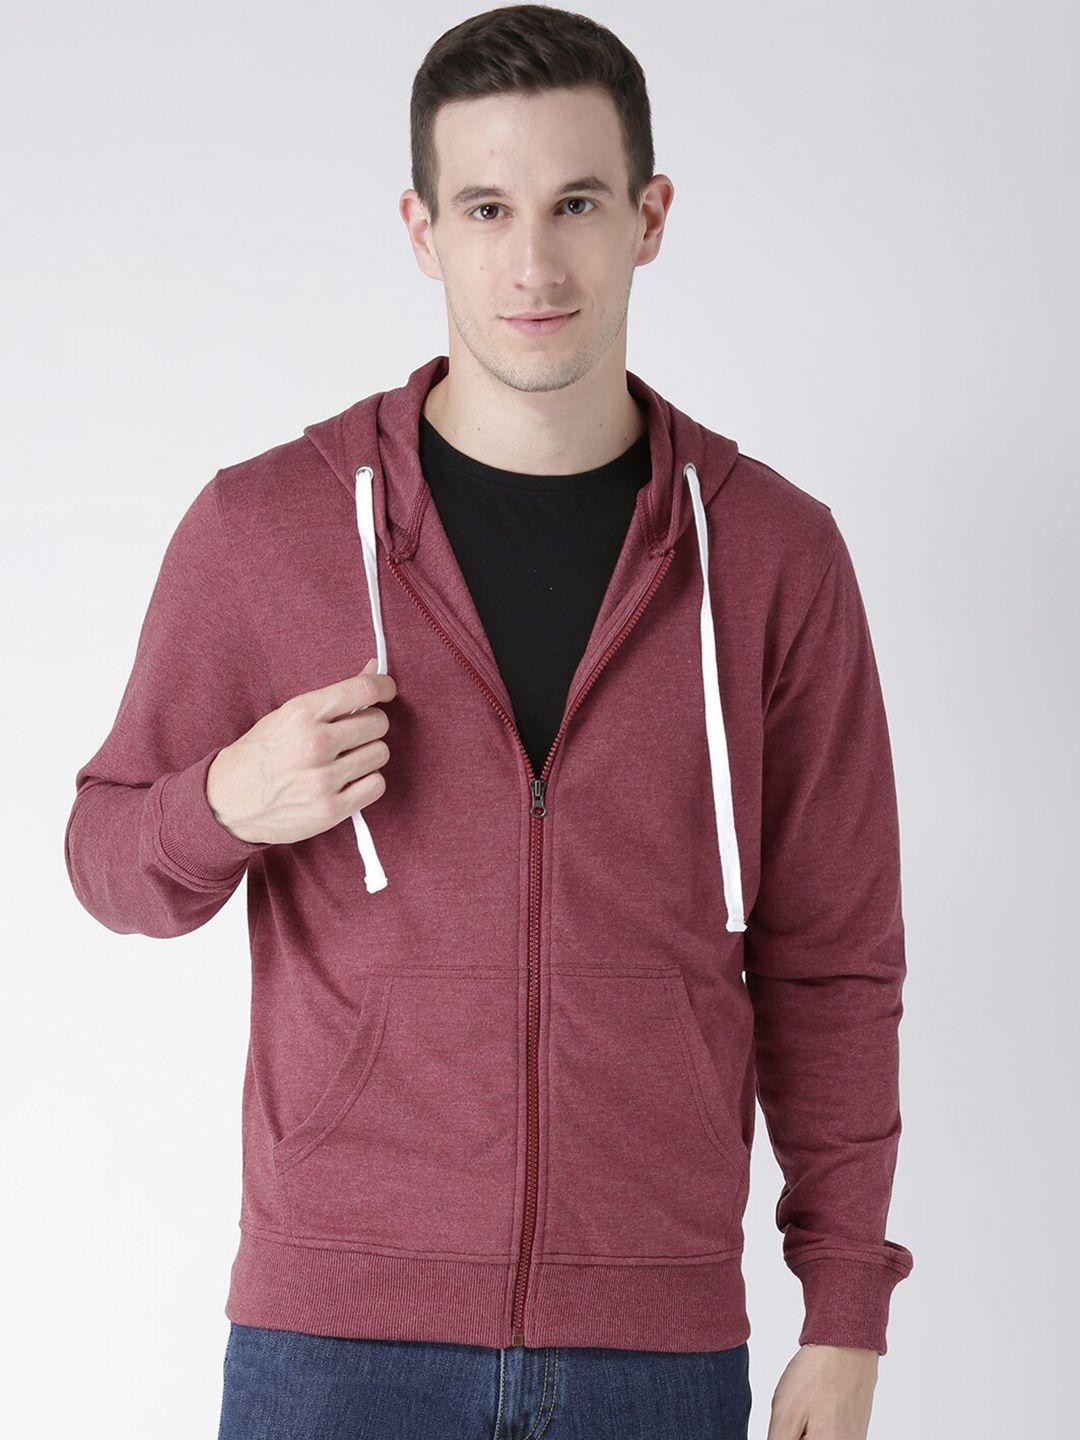 club-york-men-burgundy-solid-hooded-sweatshirt